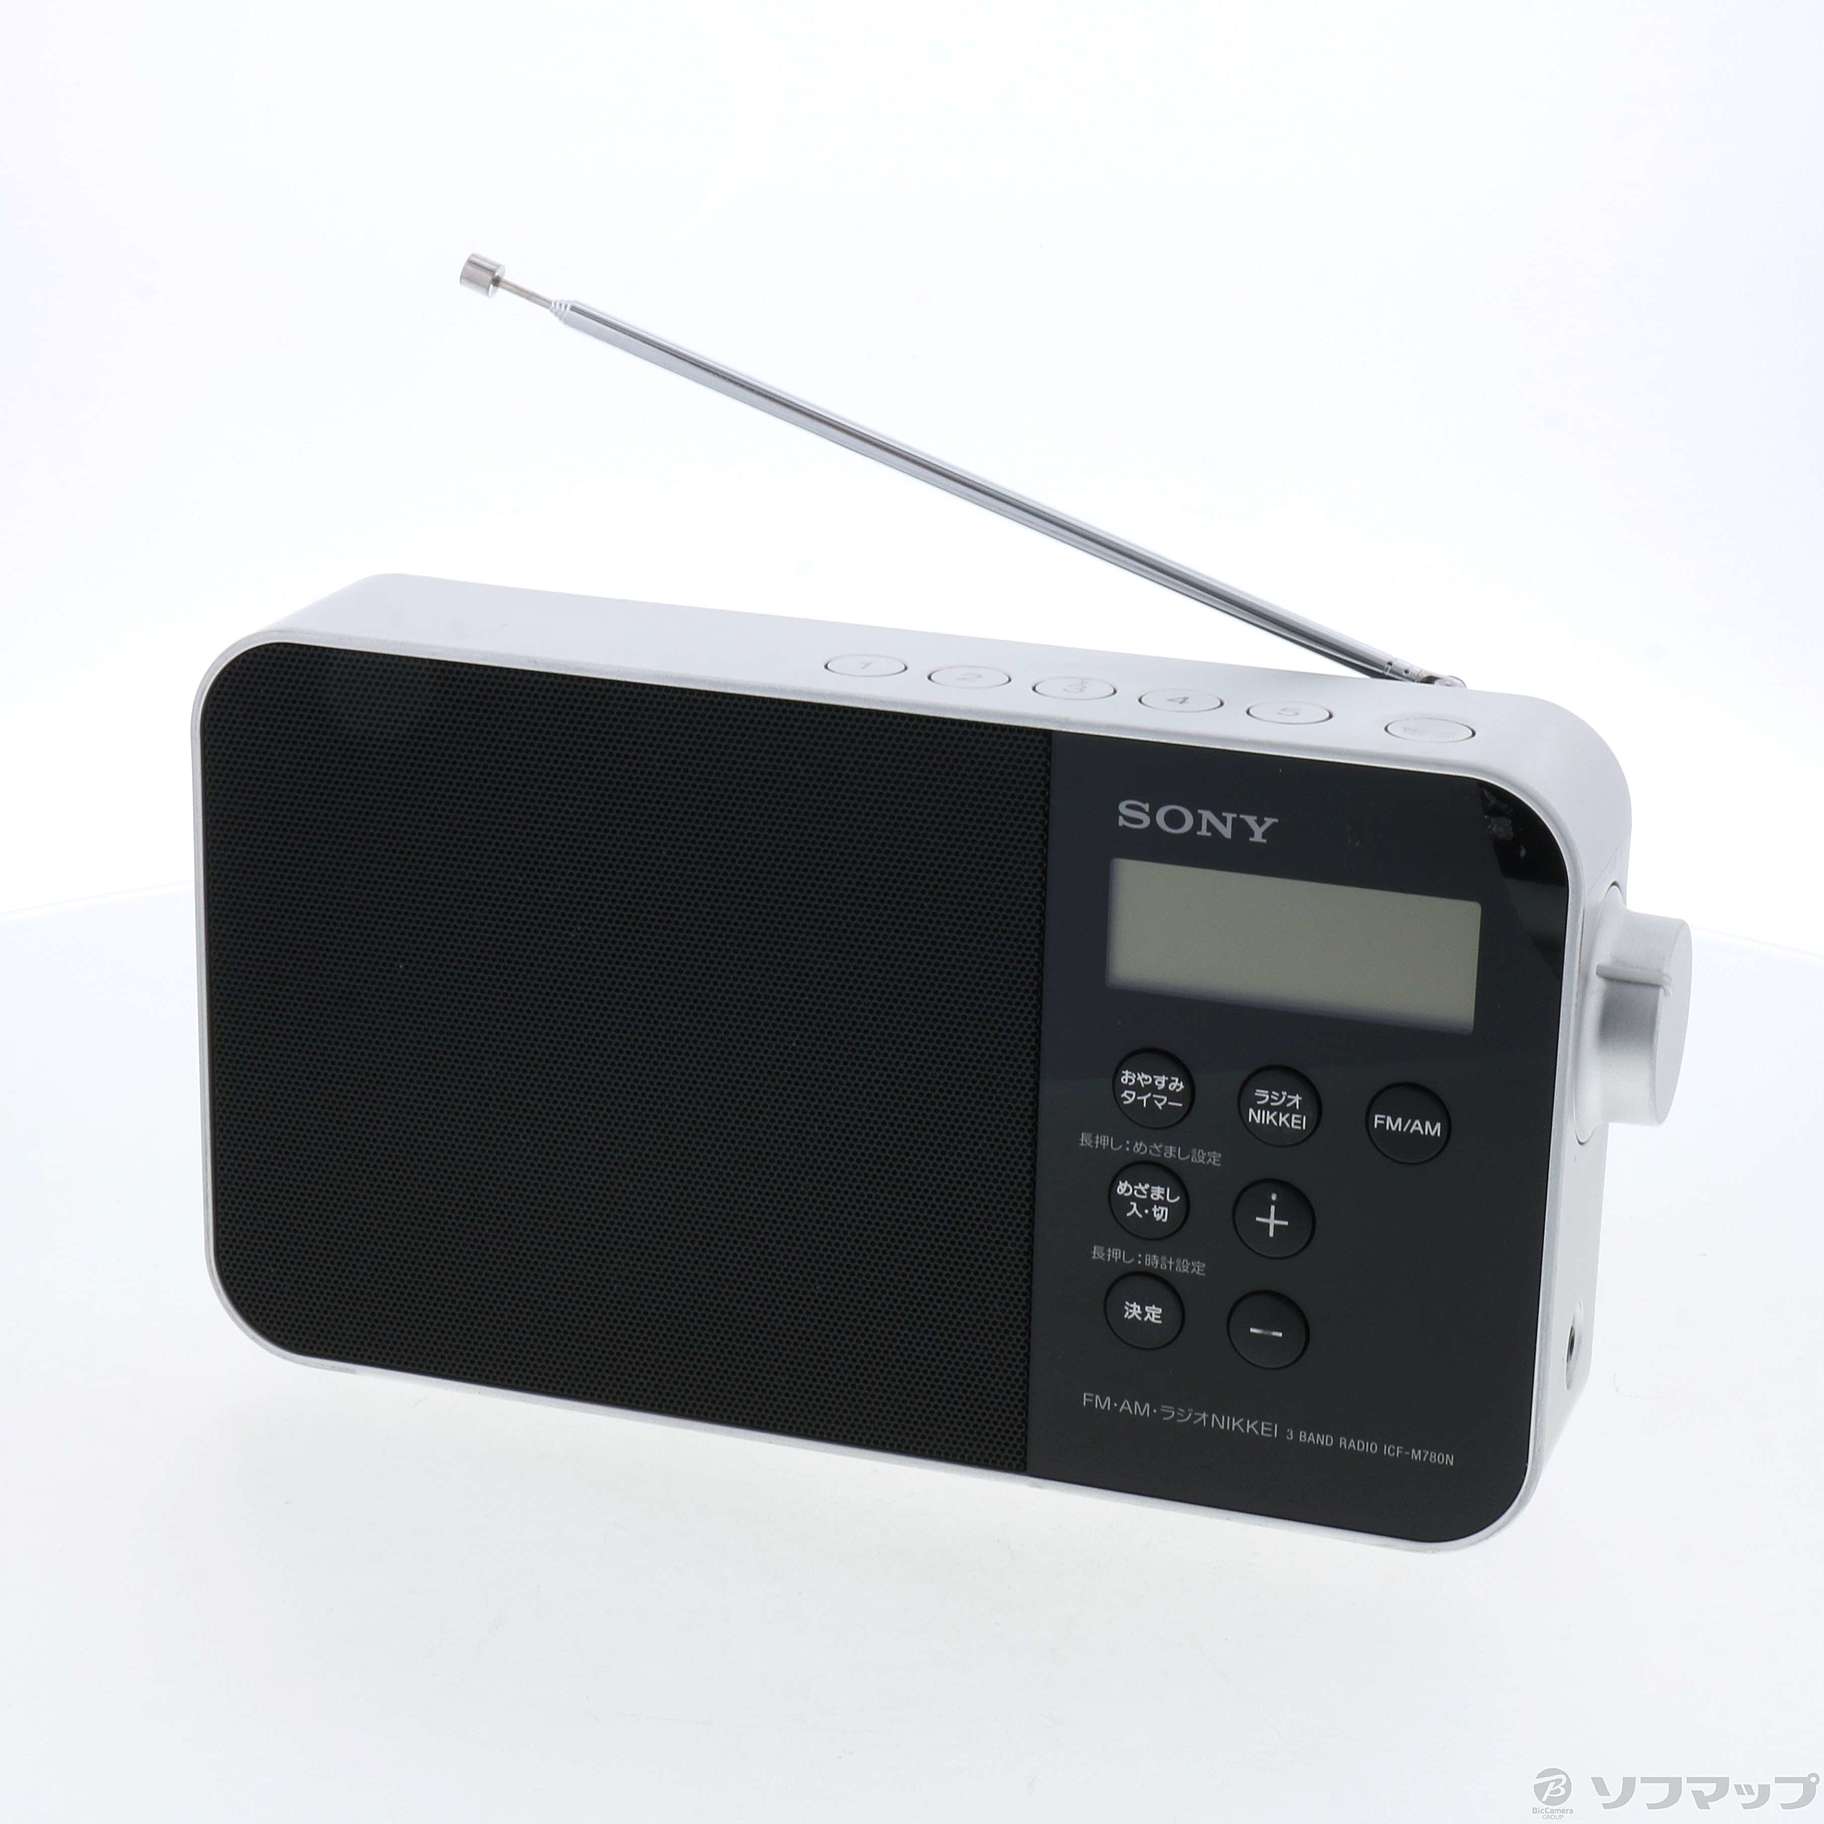 SONY ICF-M780N ポータブルラジオ【生産終了になった名機 